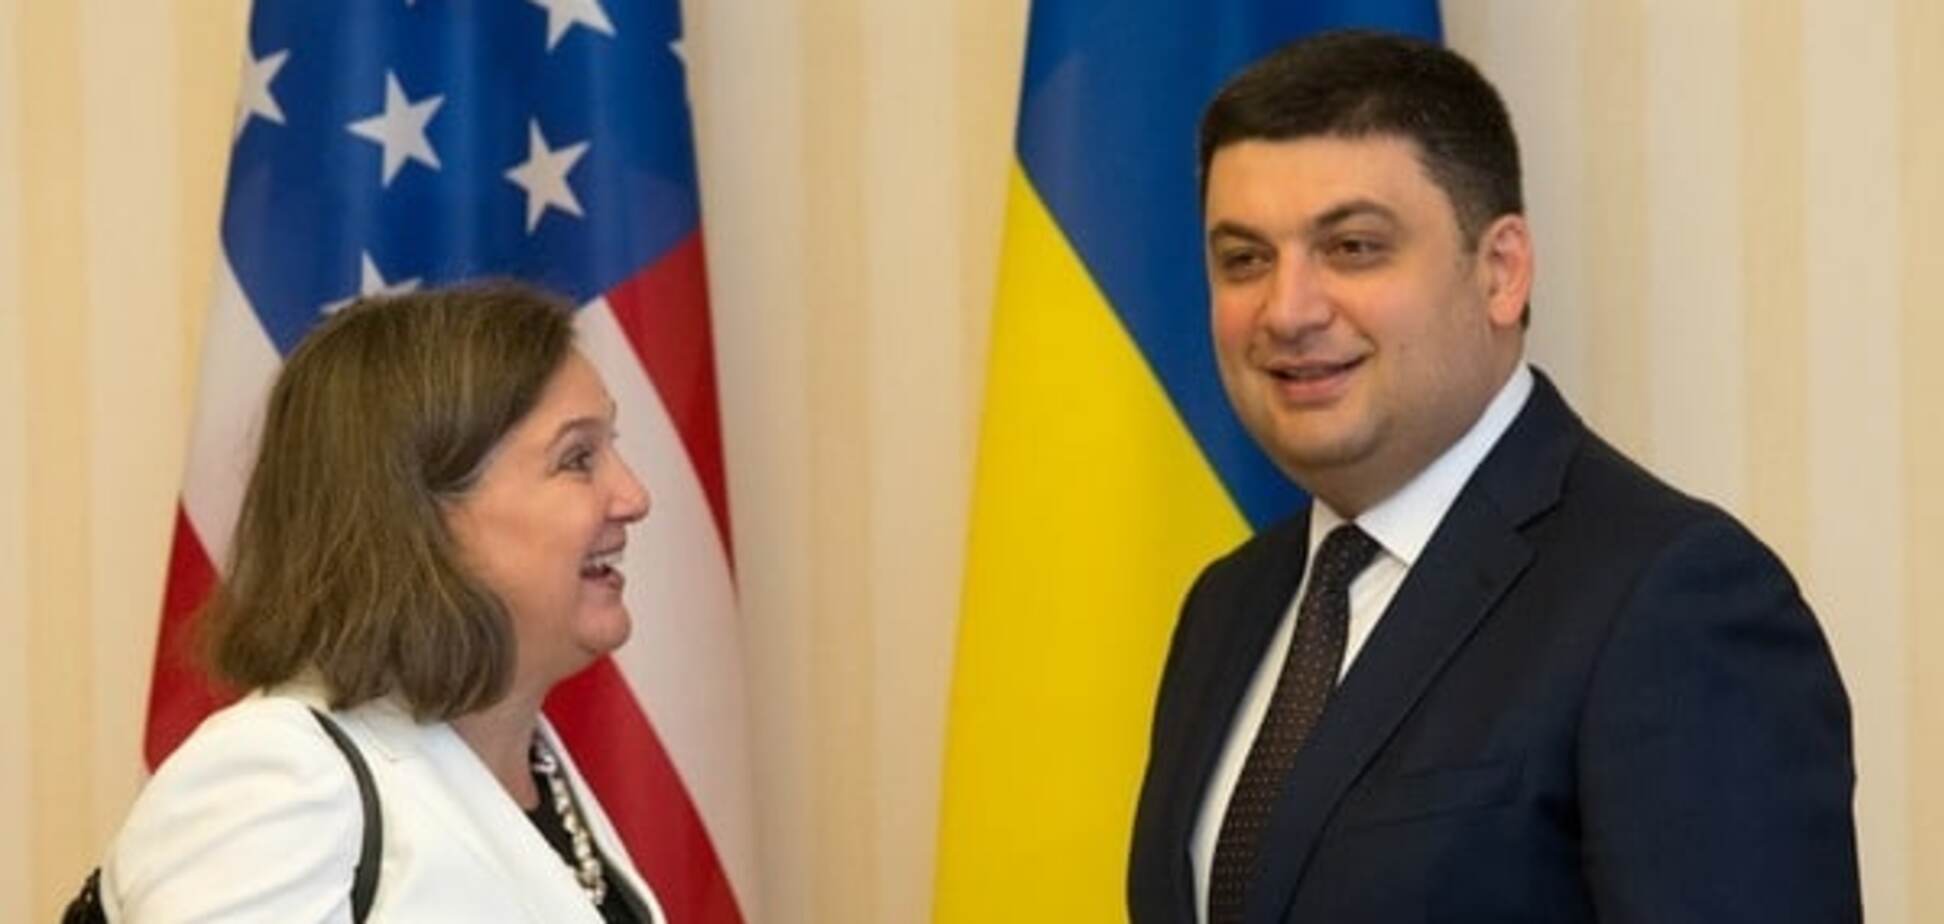 Гройсман: Нуланд не робила категоричних заяв про вибори на Донбасі